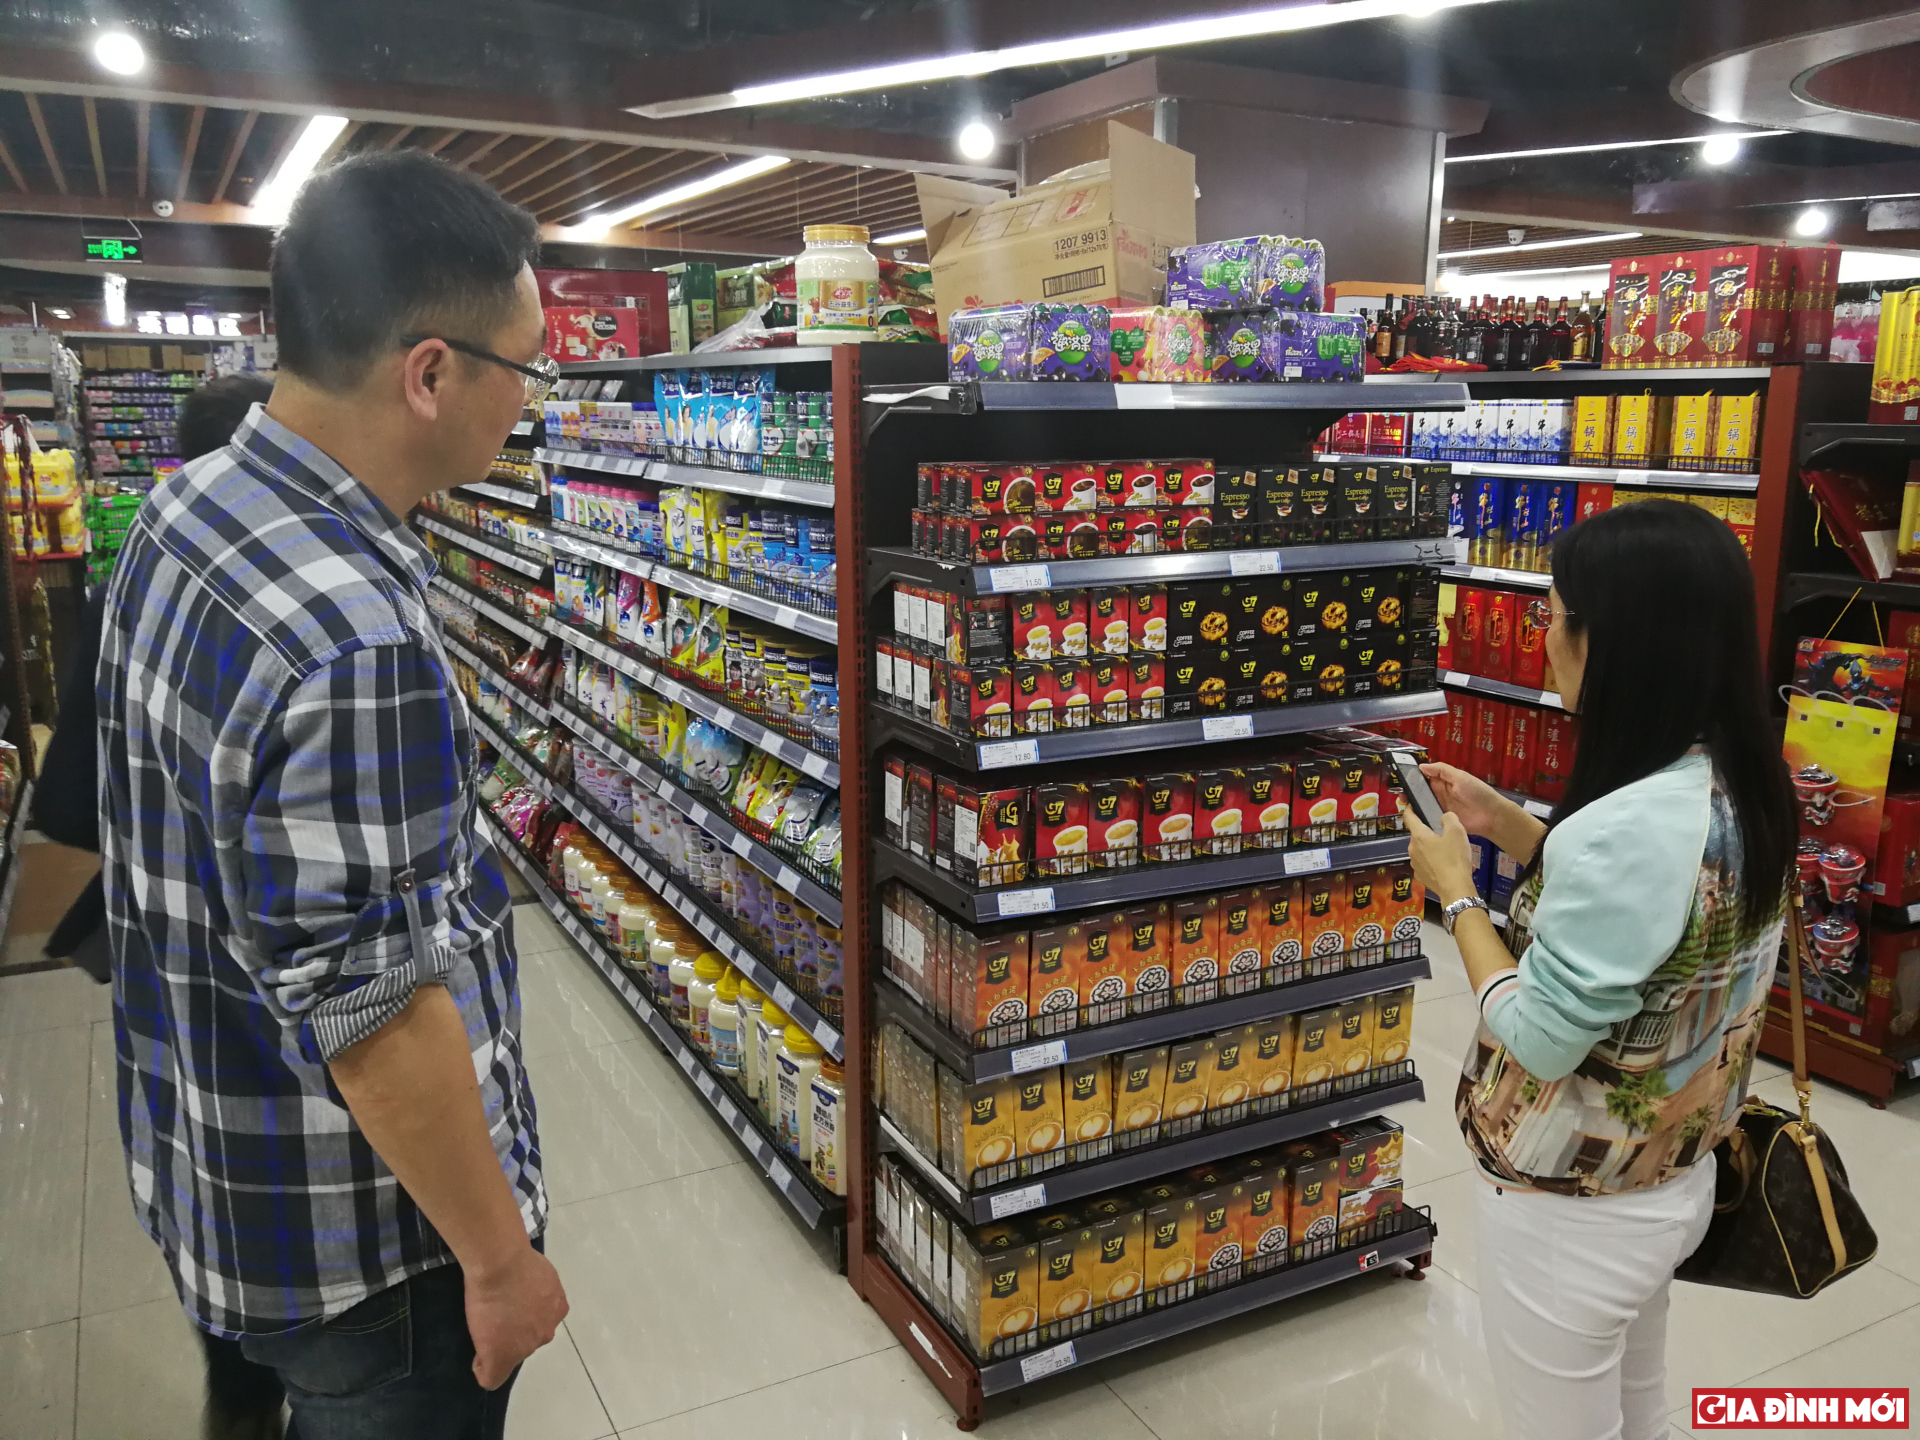 Hình ảnh sản phẩm cà phê năng lượng G7 tràn ngập tại các cửa hàng, siêu thị ở Trung Quốc  